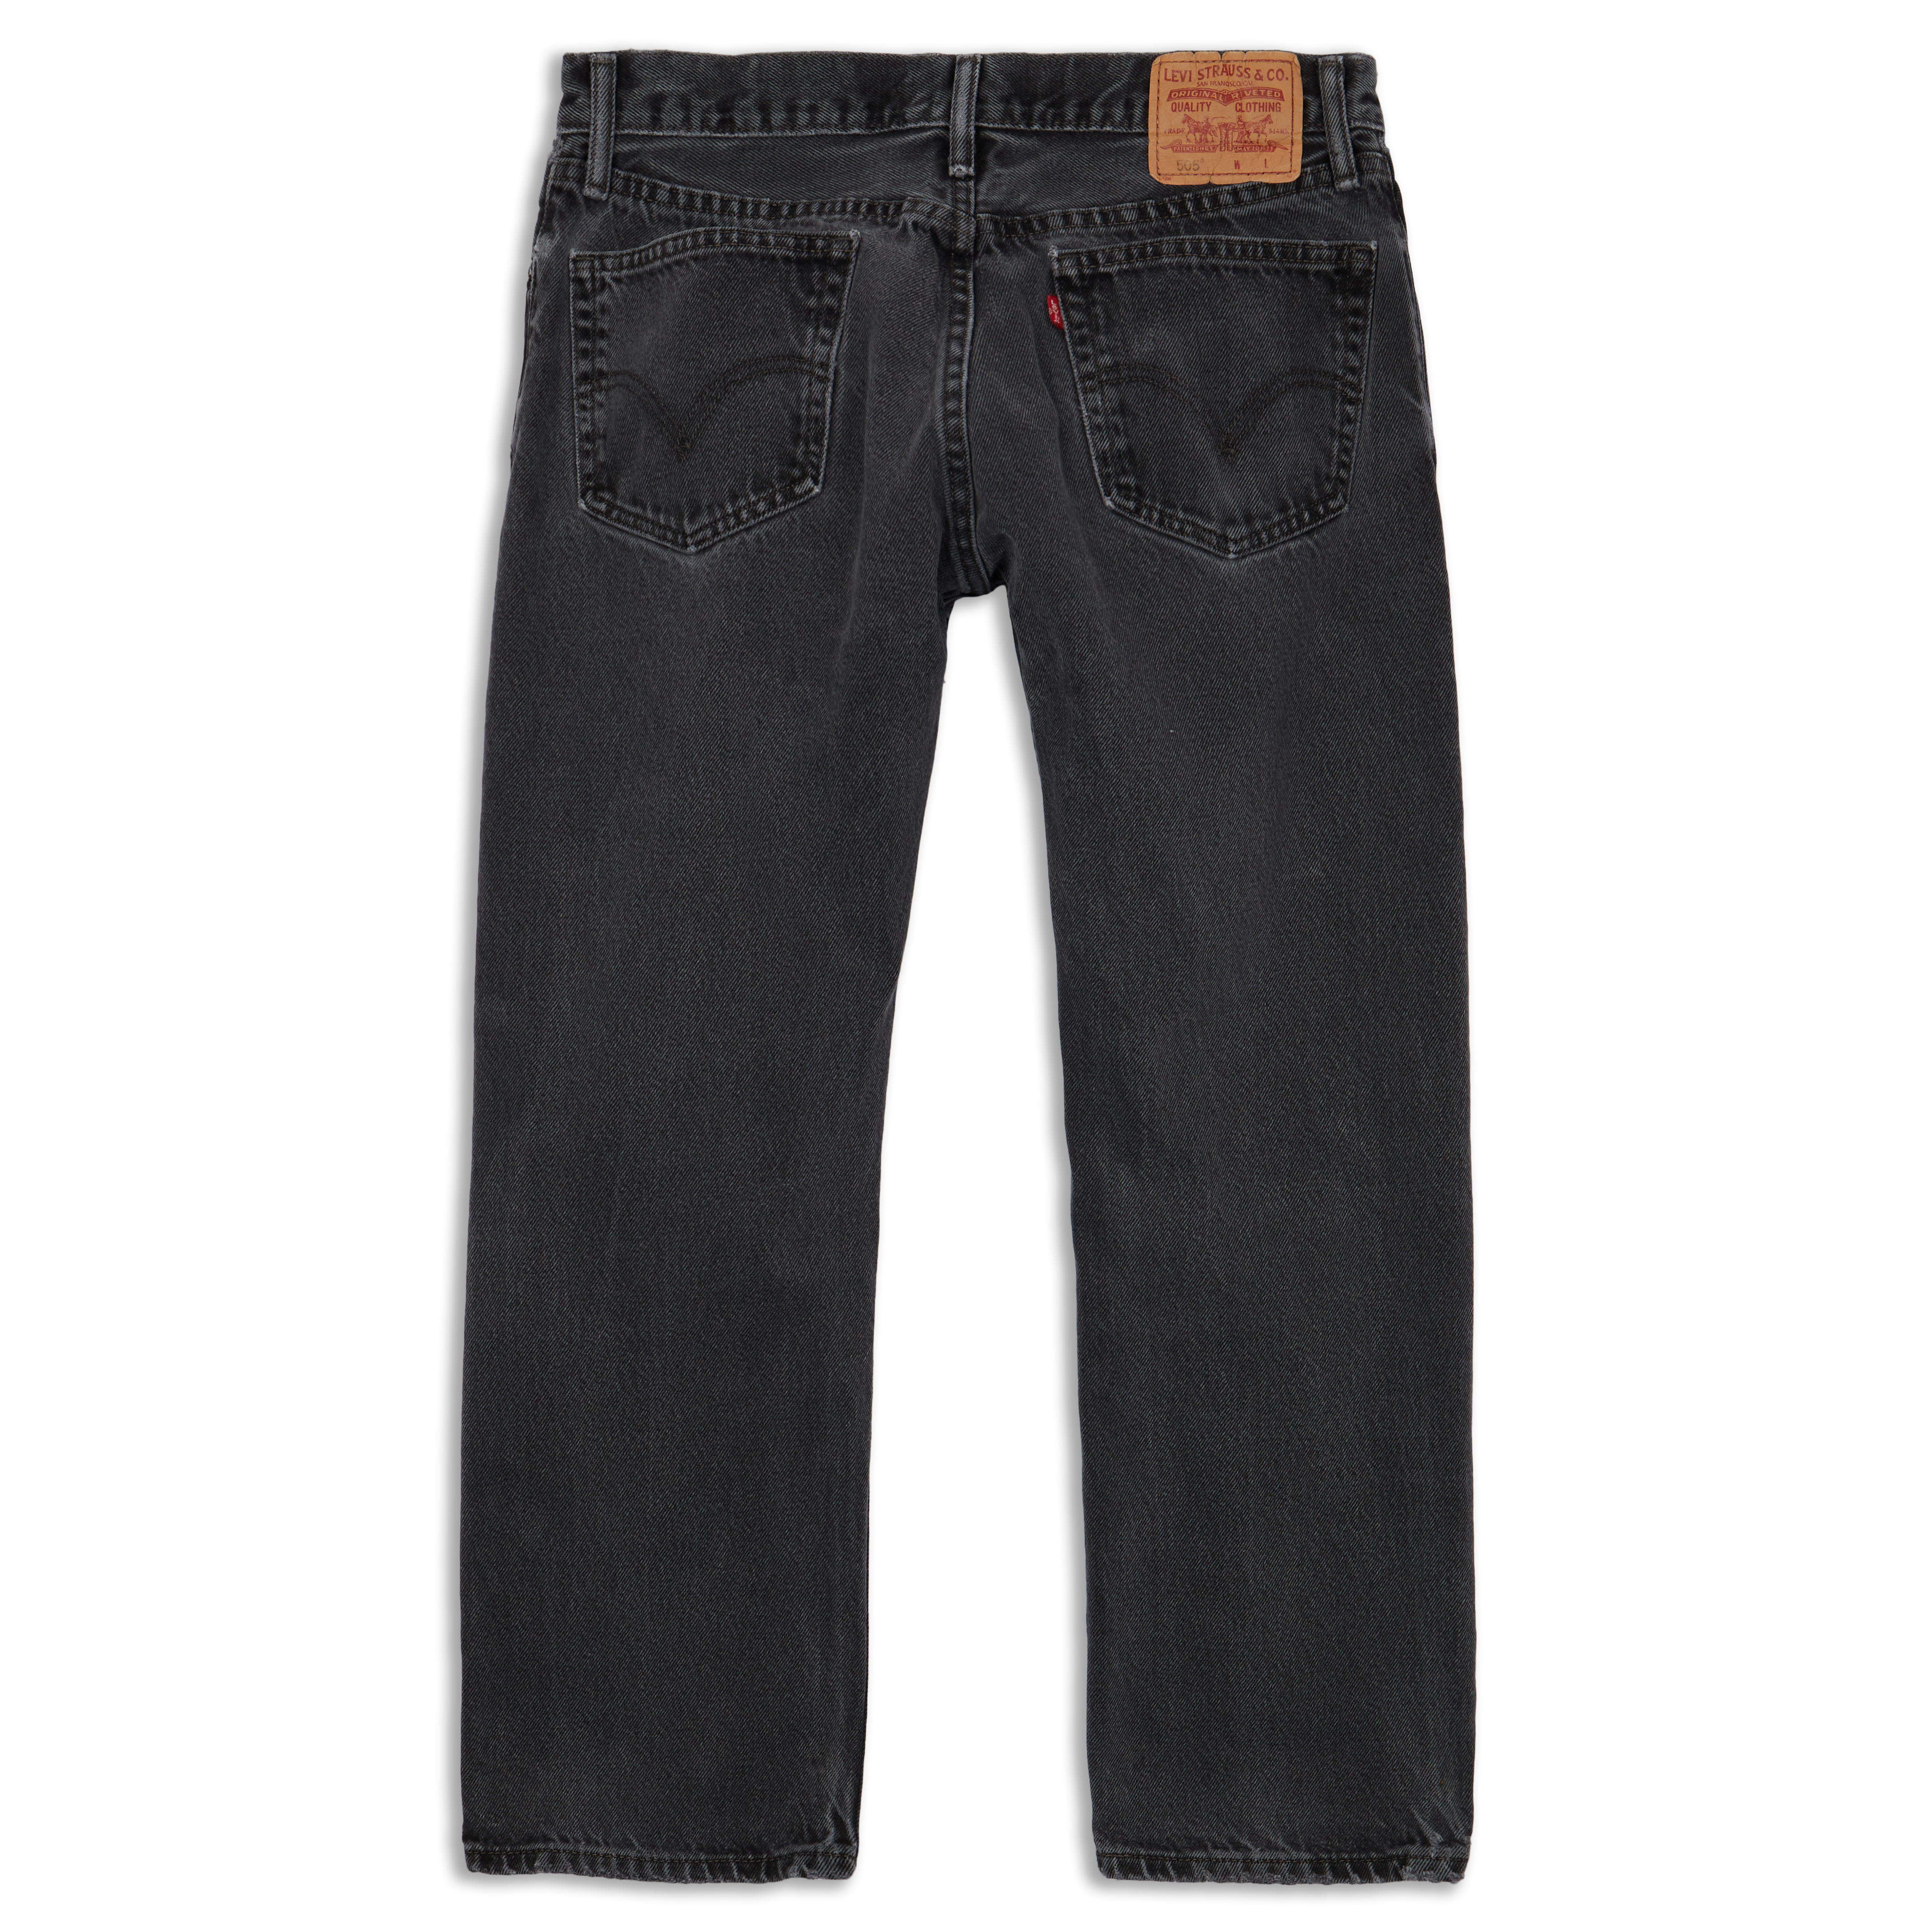 Levis 505™ Regular Fit Men's Jeans Dark Stonewash